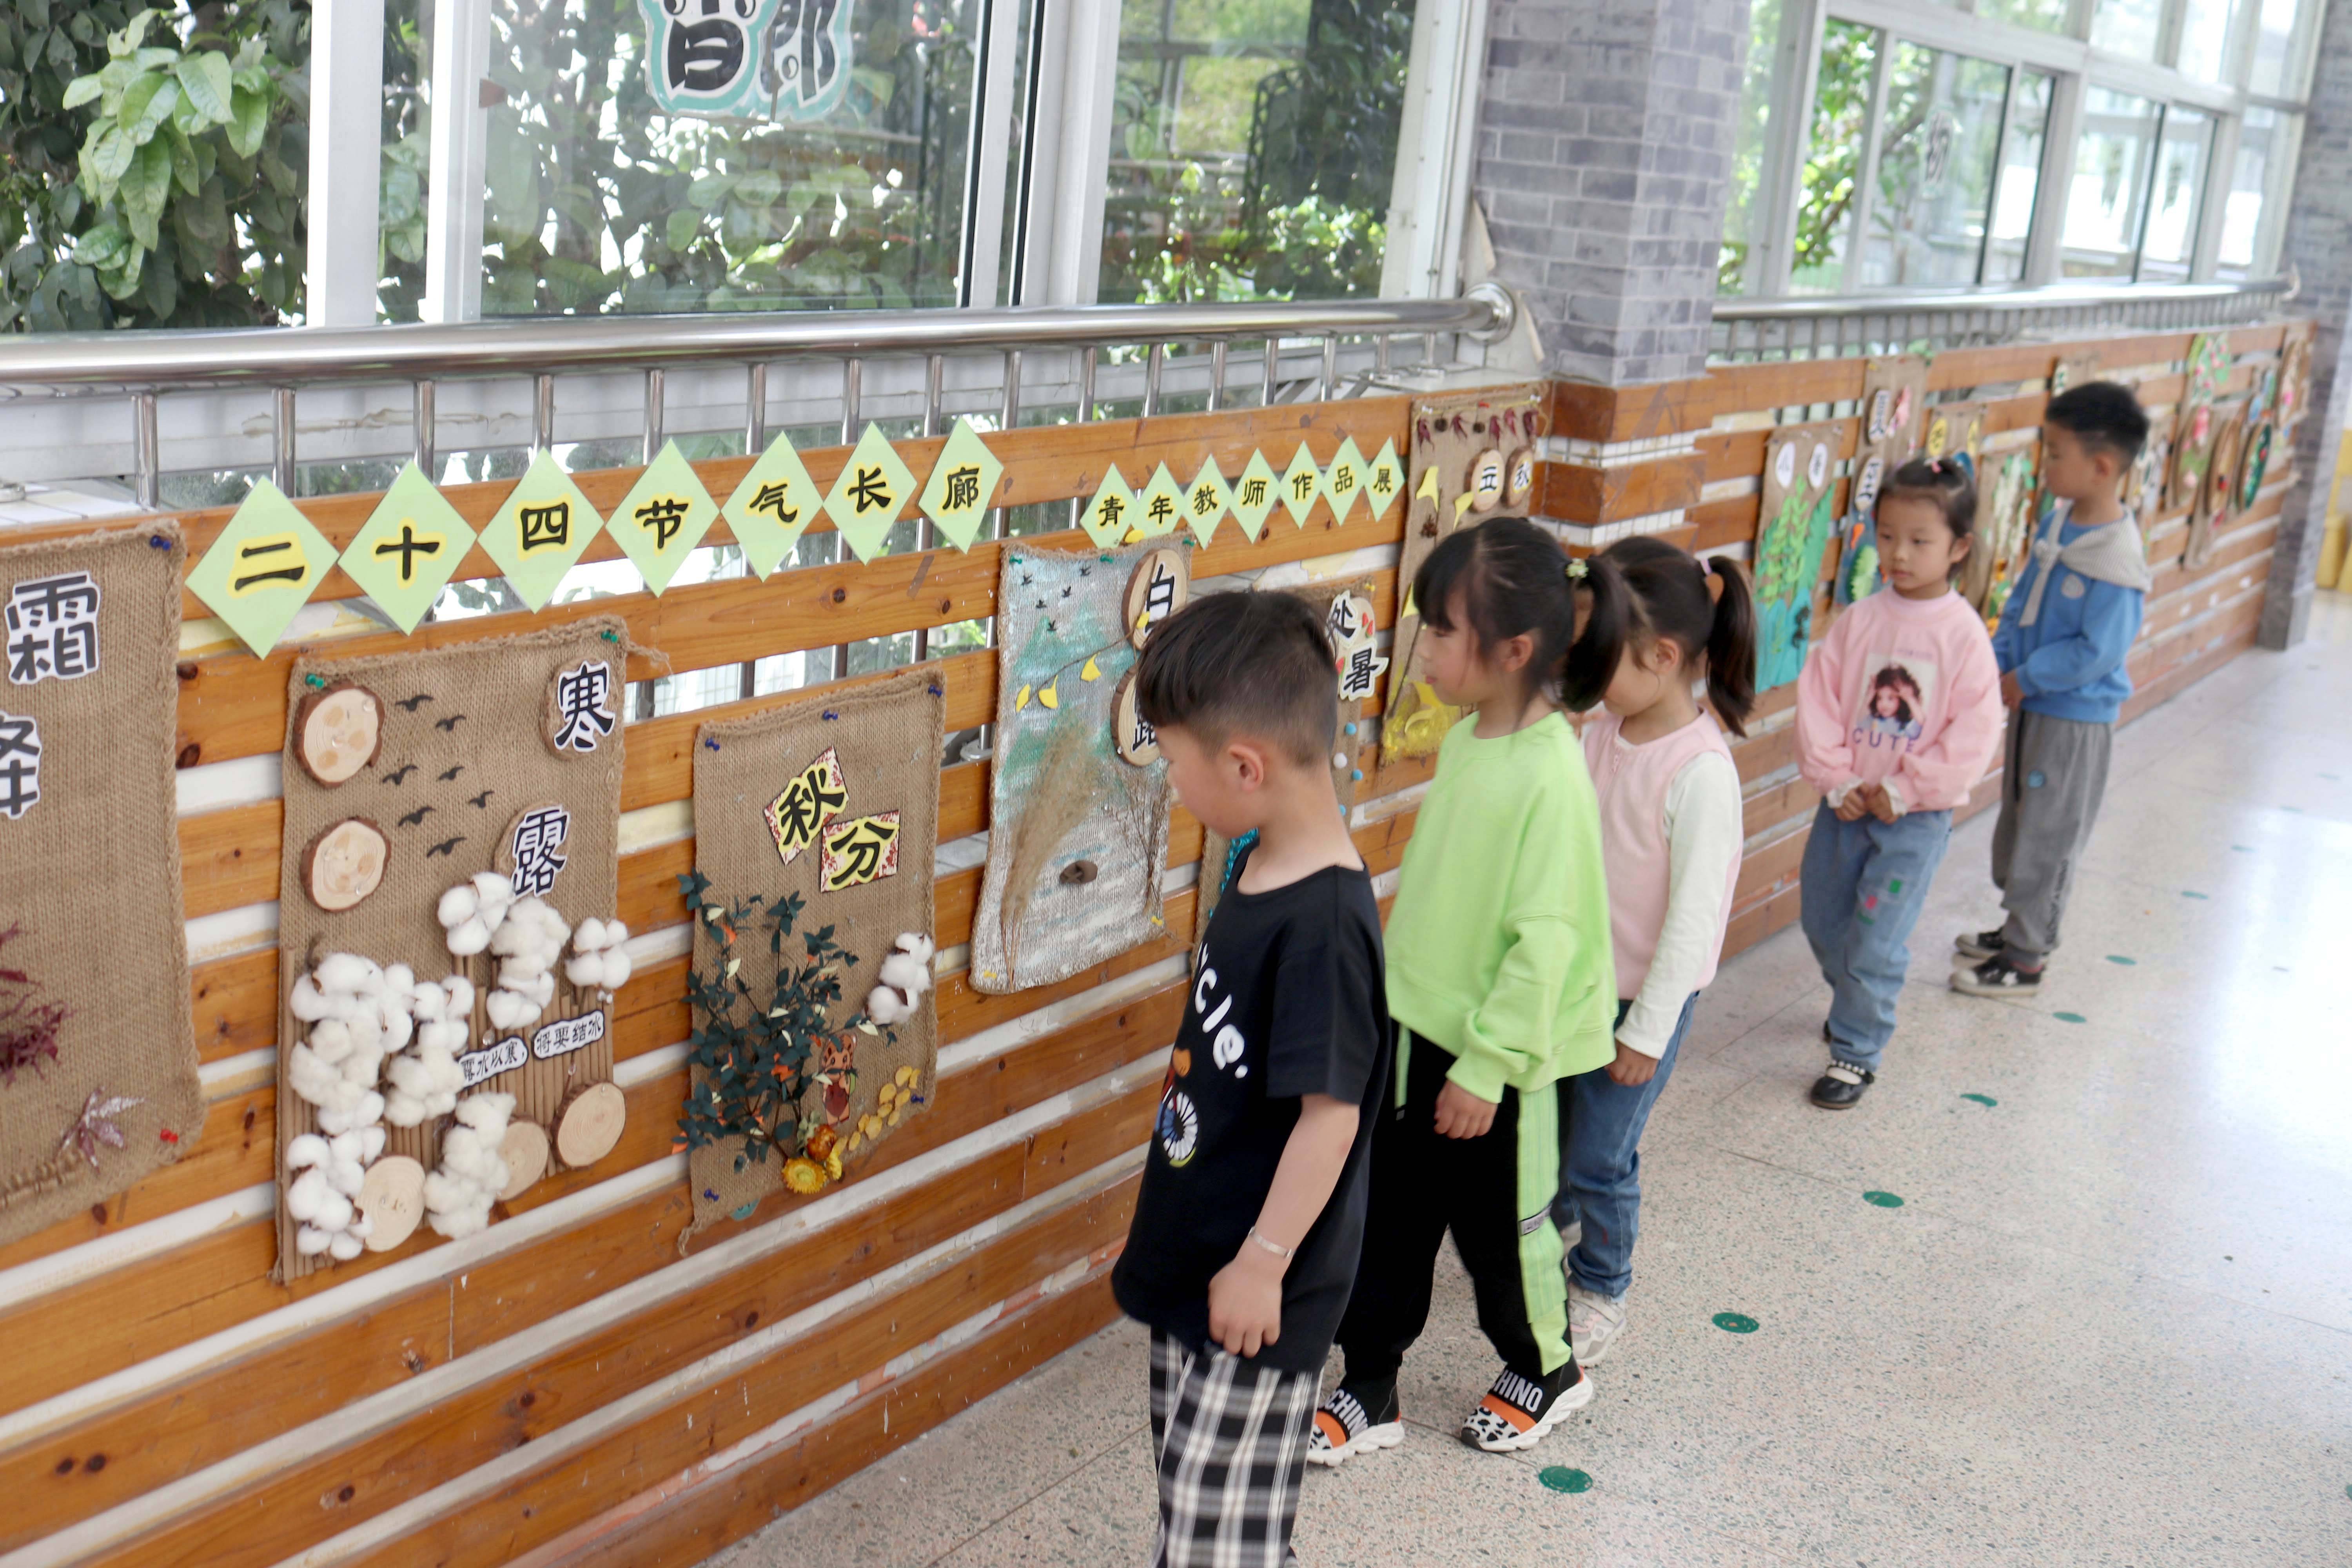 苏州市虎丘中心幼儿园:二十四节气图 美翻了!